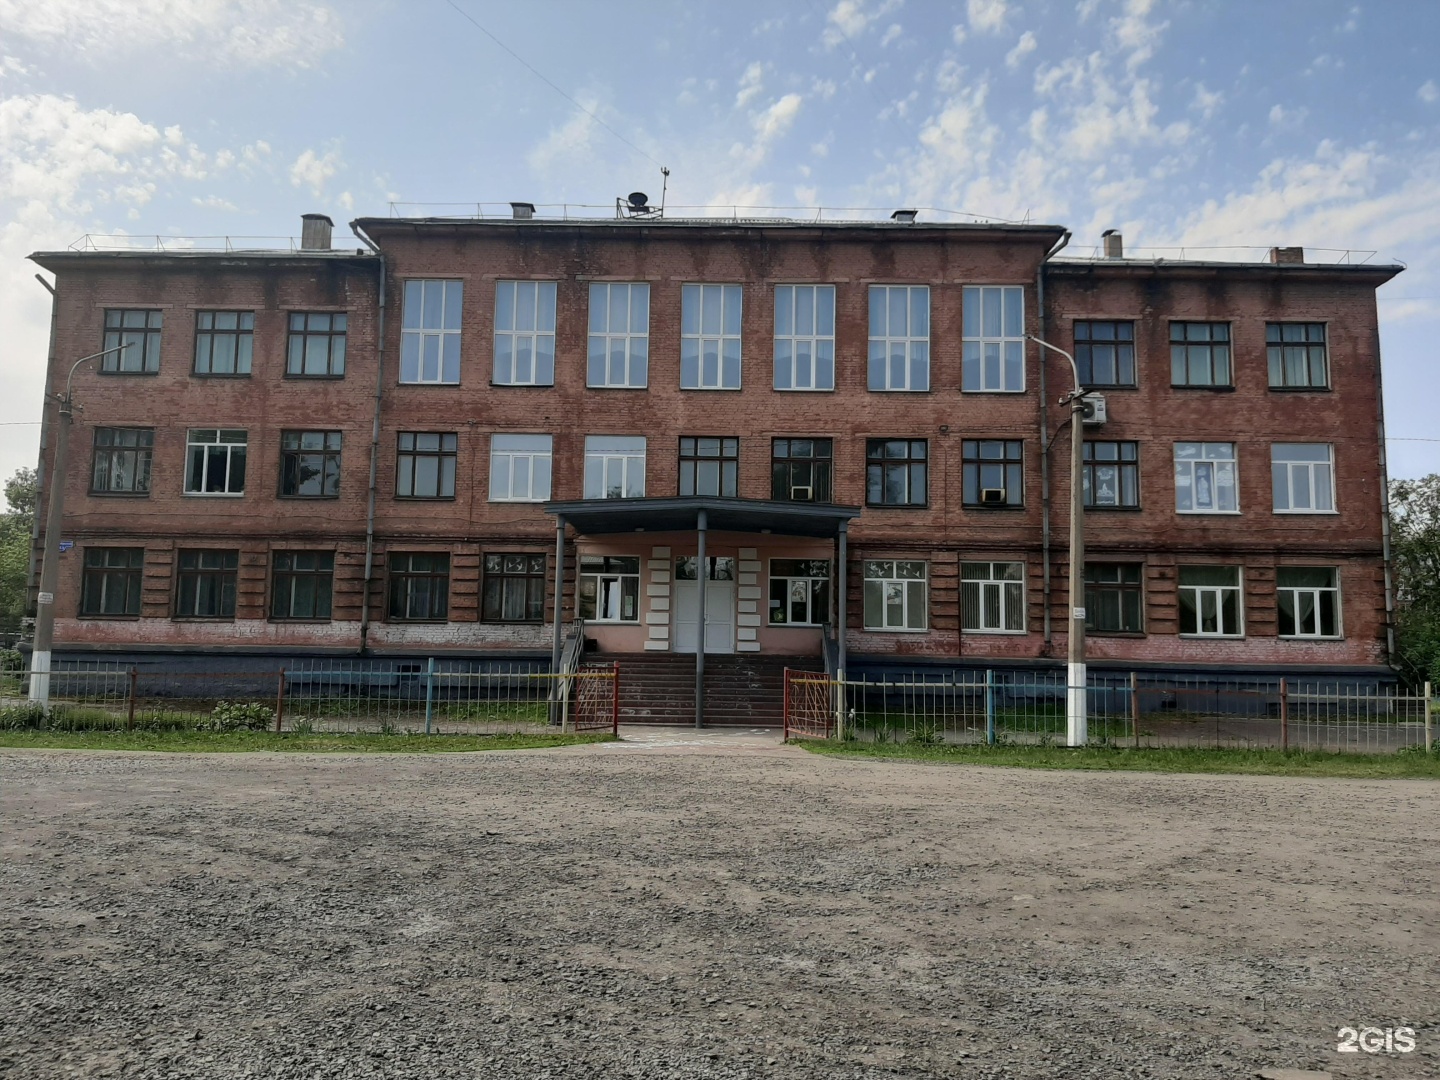 31 школа новокузнецк